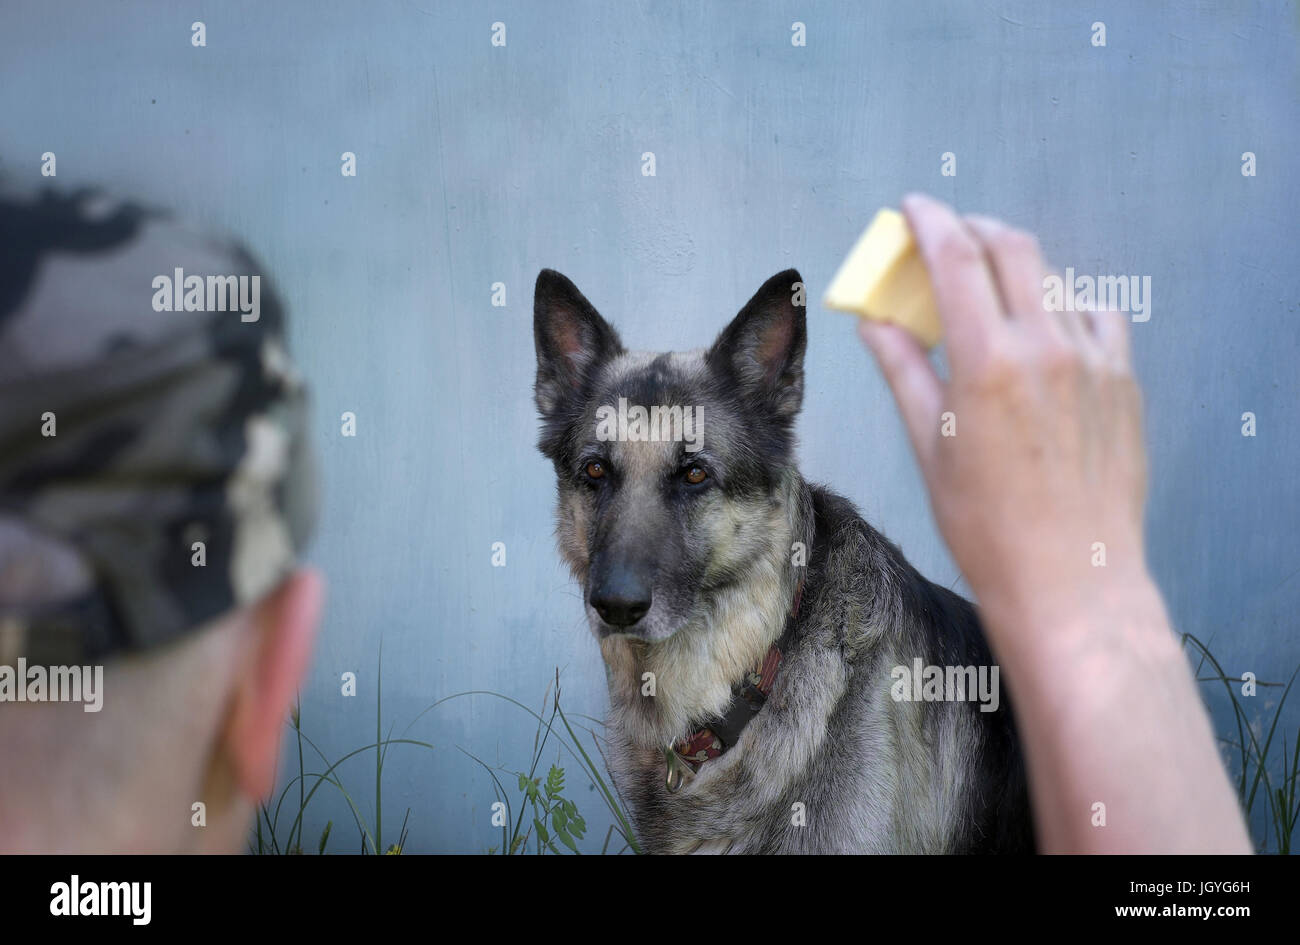 Cane seriamente fissando il pezzo di formaggio in una mano di cane trainer. La messa a fuoco in background Foto Stock